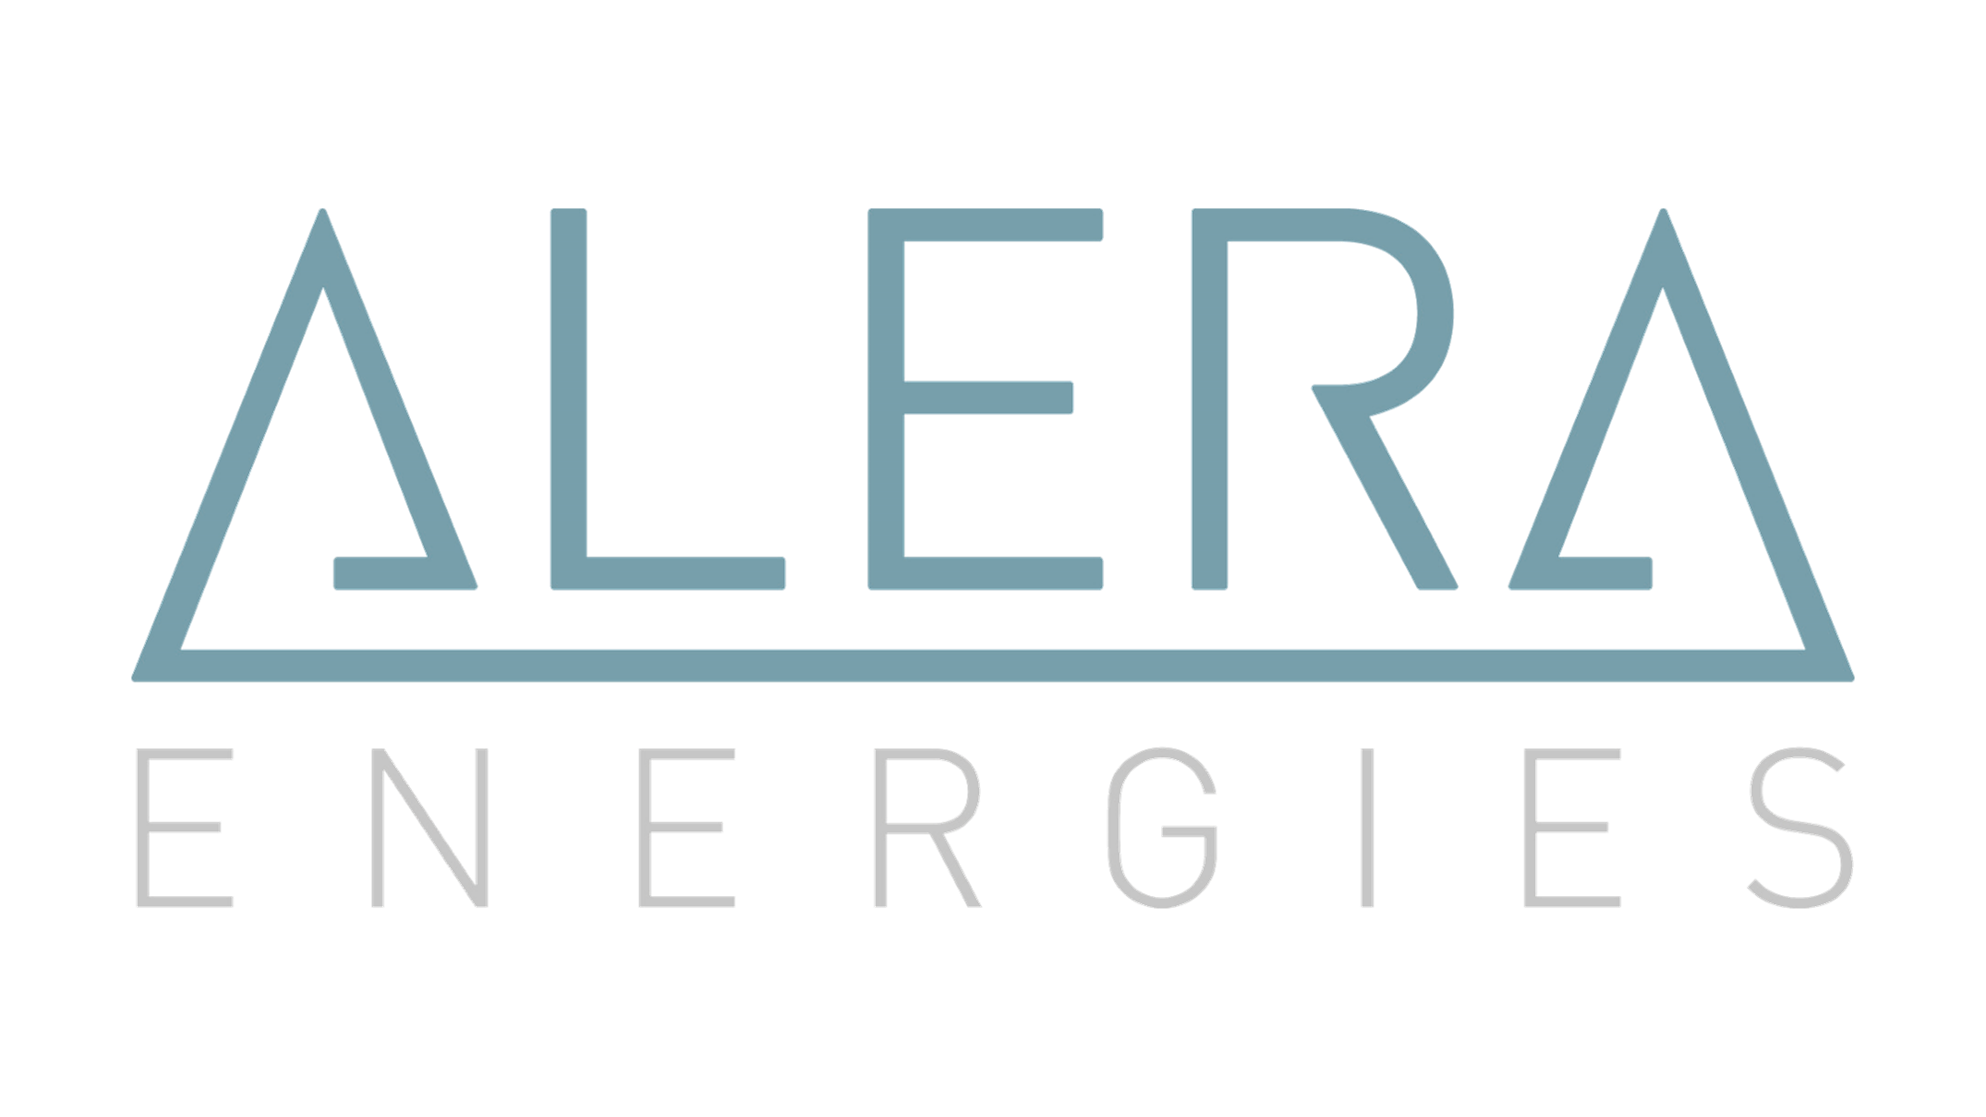 Willkommen bei der Alera energies AG